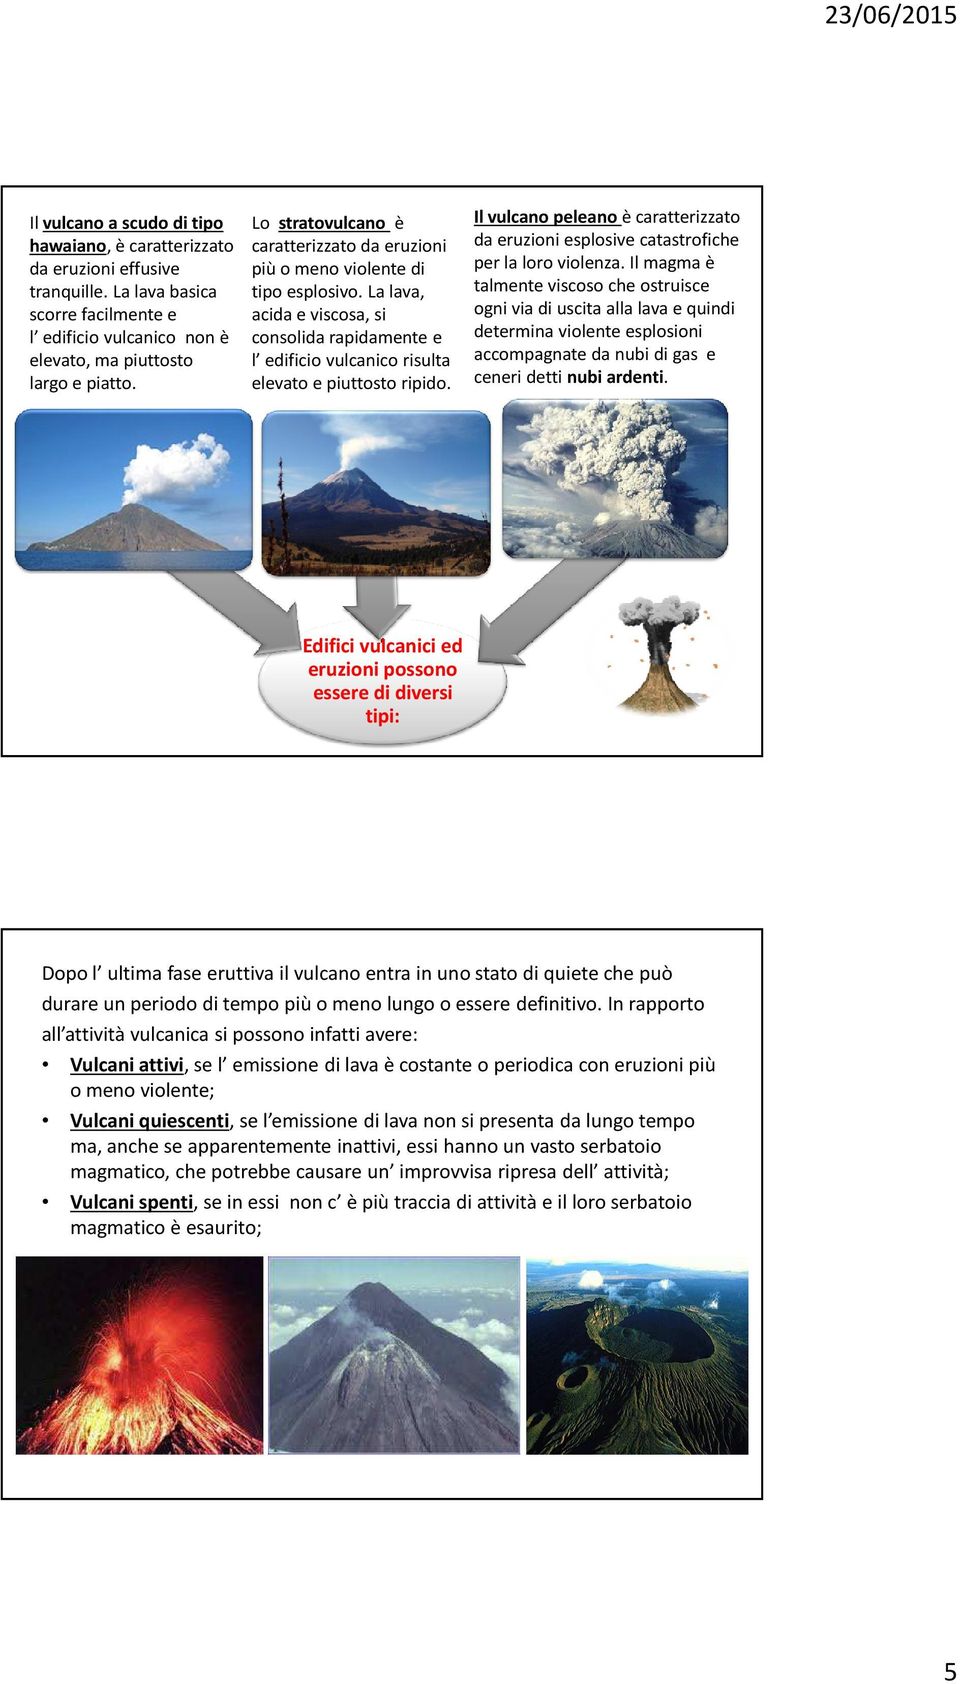 Il vulcano peleano è caratterizzato da eruzioni esplosive catastrofiche per la loro violenza.